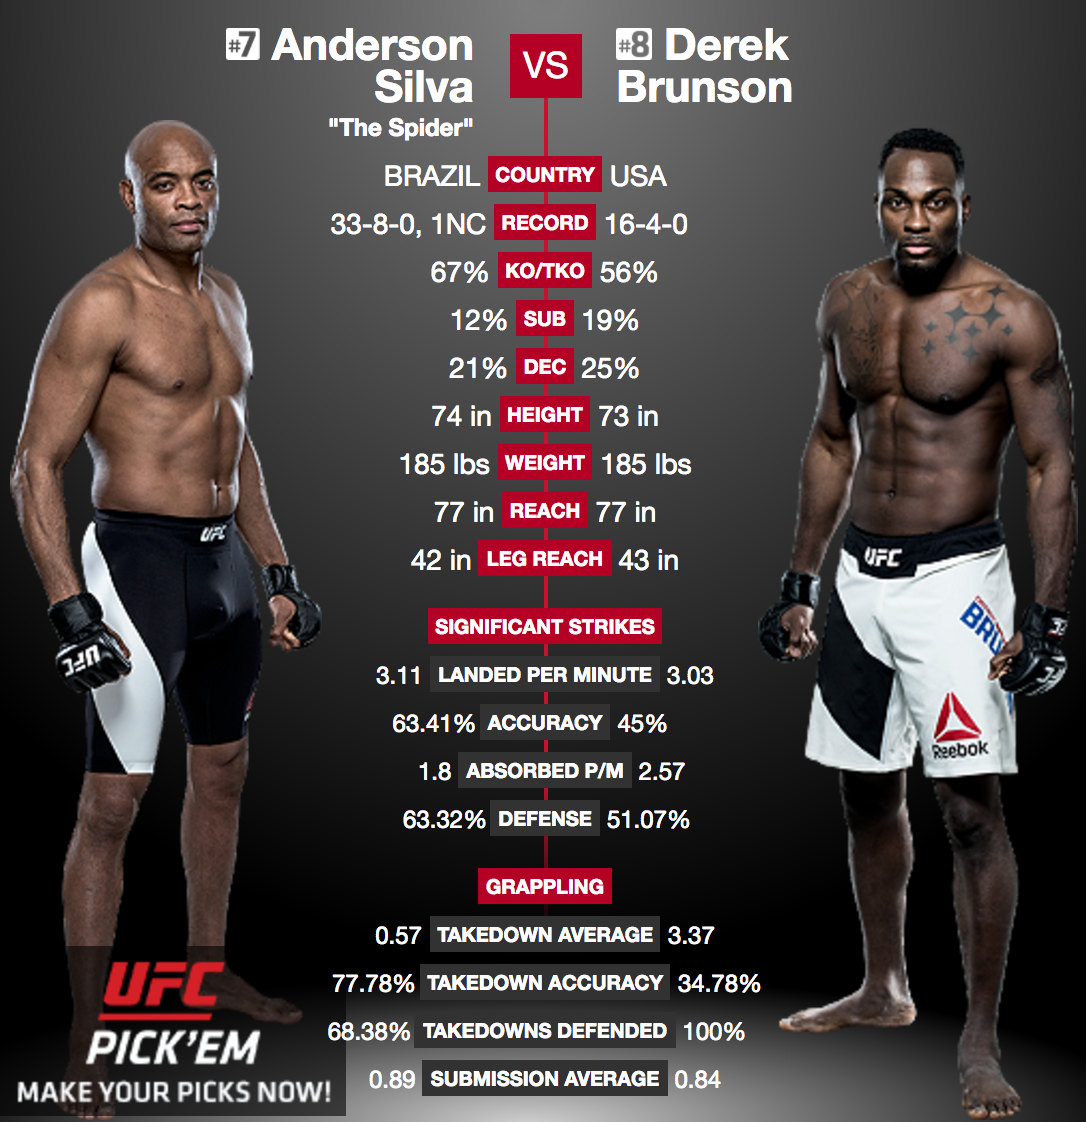 Anderson Silva vs Derek Brunson - UFC 208